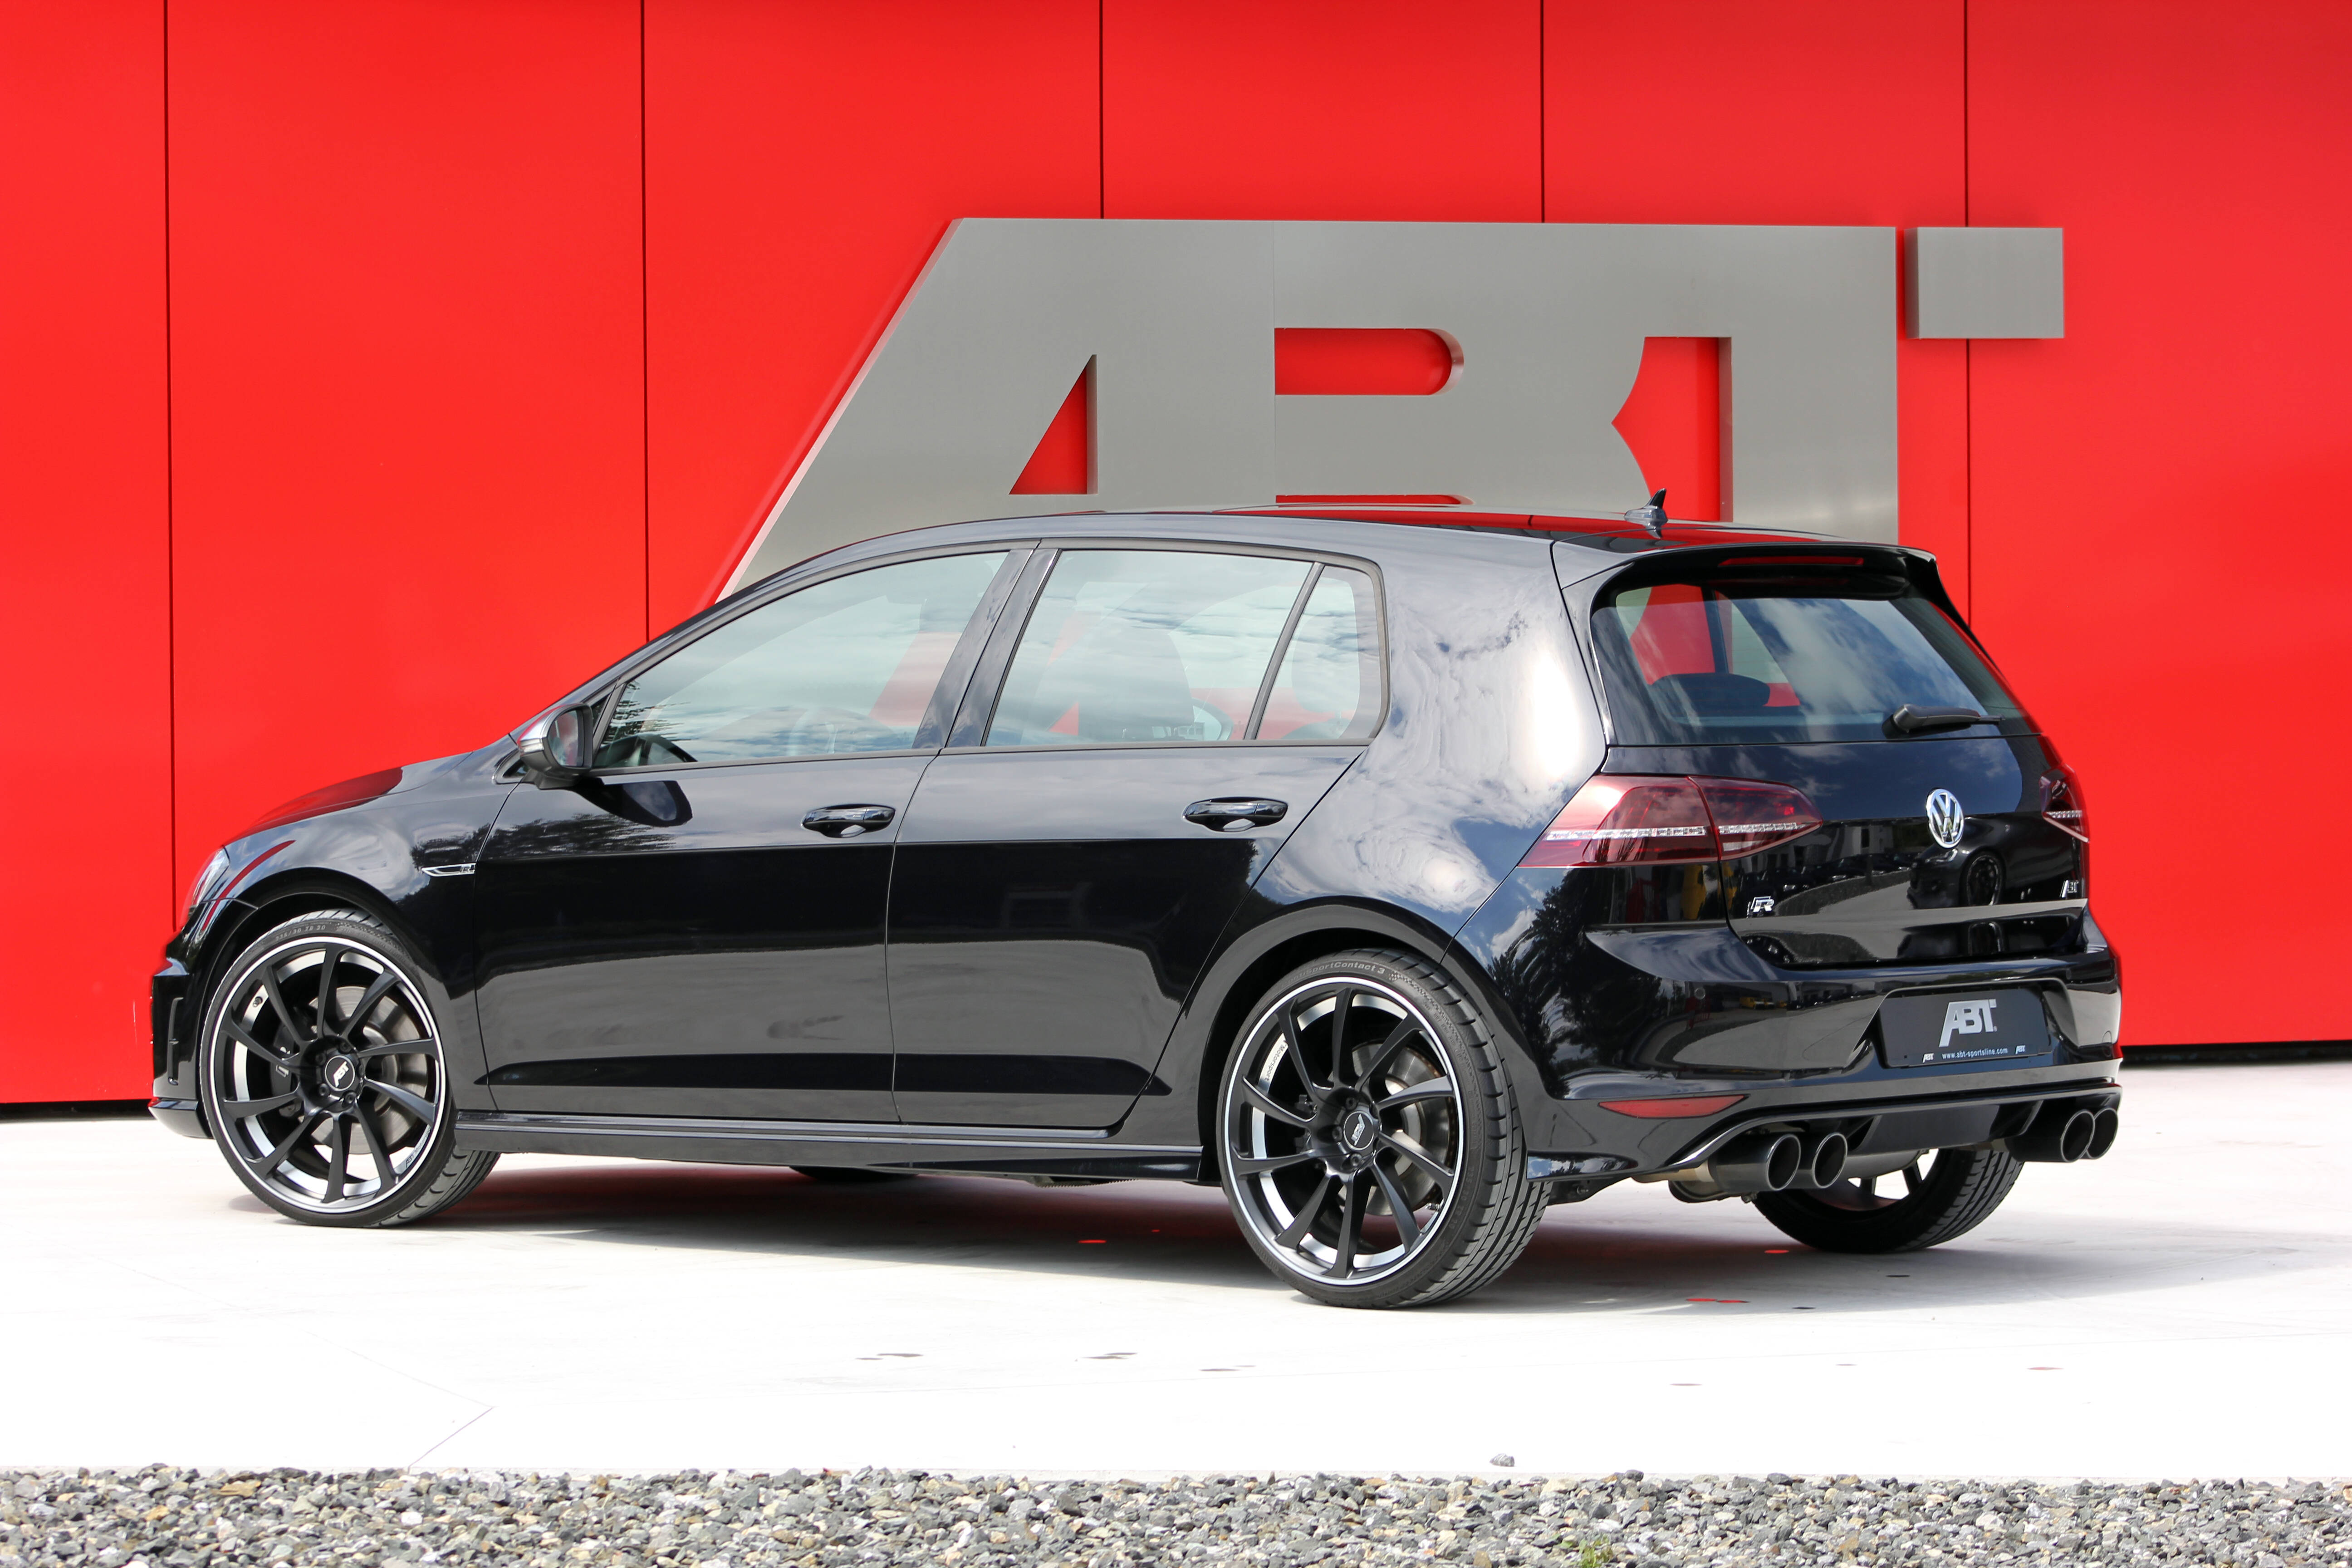 ESSEN MOTOR SHOW 2013: Die dunkle Seite der Macht - ABT Golf VII GTI Dark  Edition - Audi Tuning, VW Tuning, Chiptuning von ABT Sportsline.